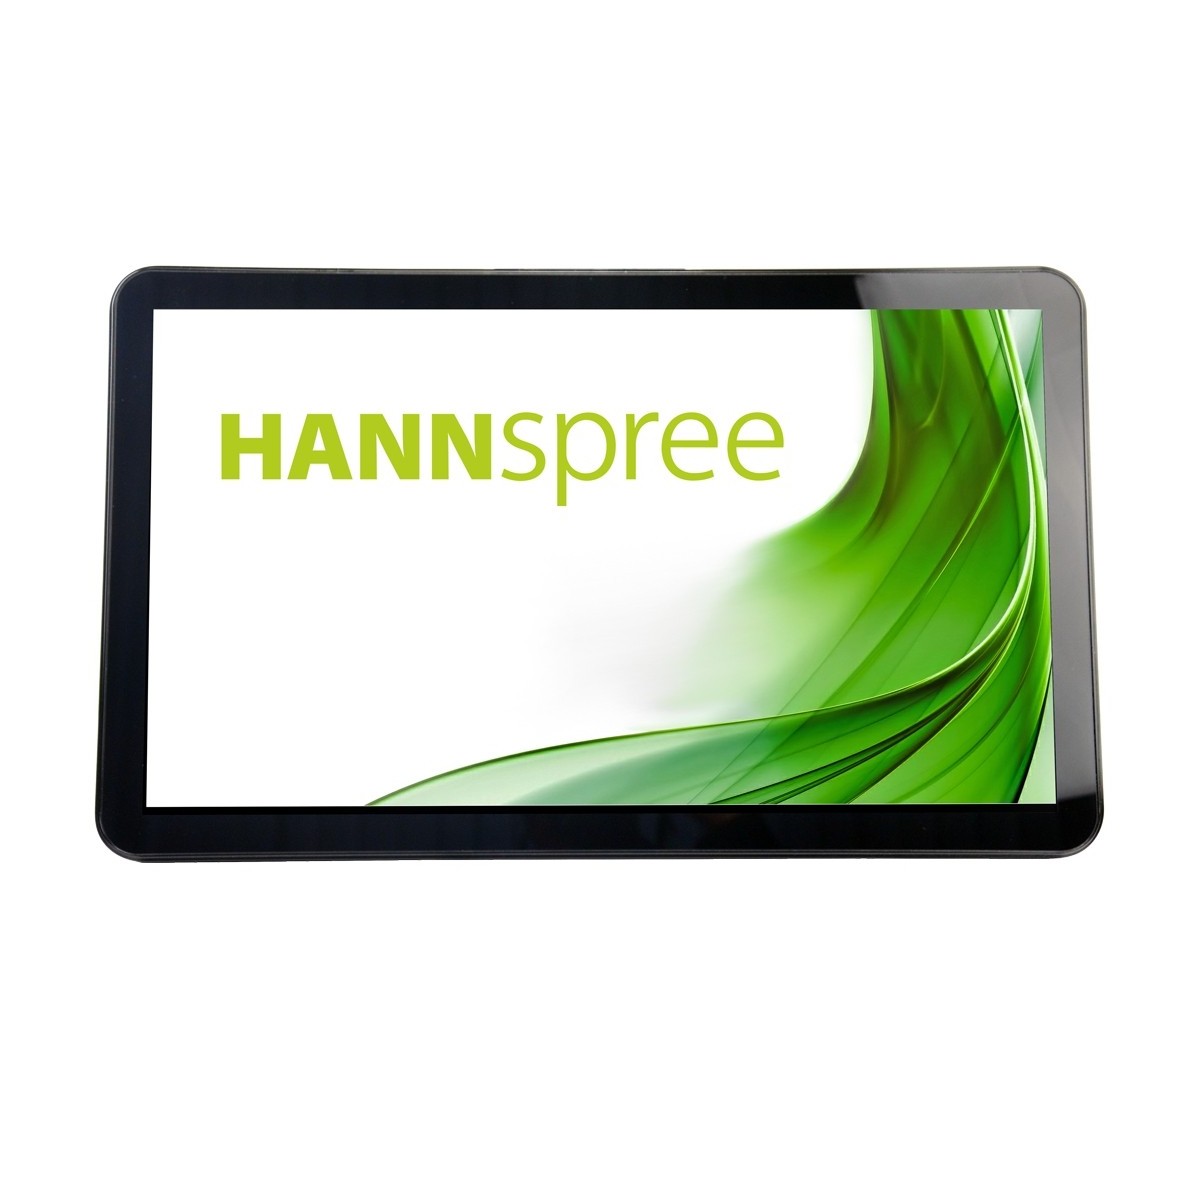 Hannspree HO 245 PTB - 60.5 cm (23.8) - 285 cd/m² - Full HD - LED - 16:9 - 1920 x 1080 pixels